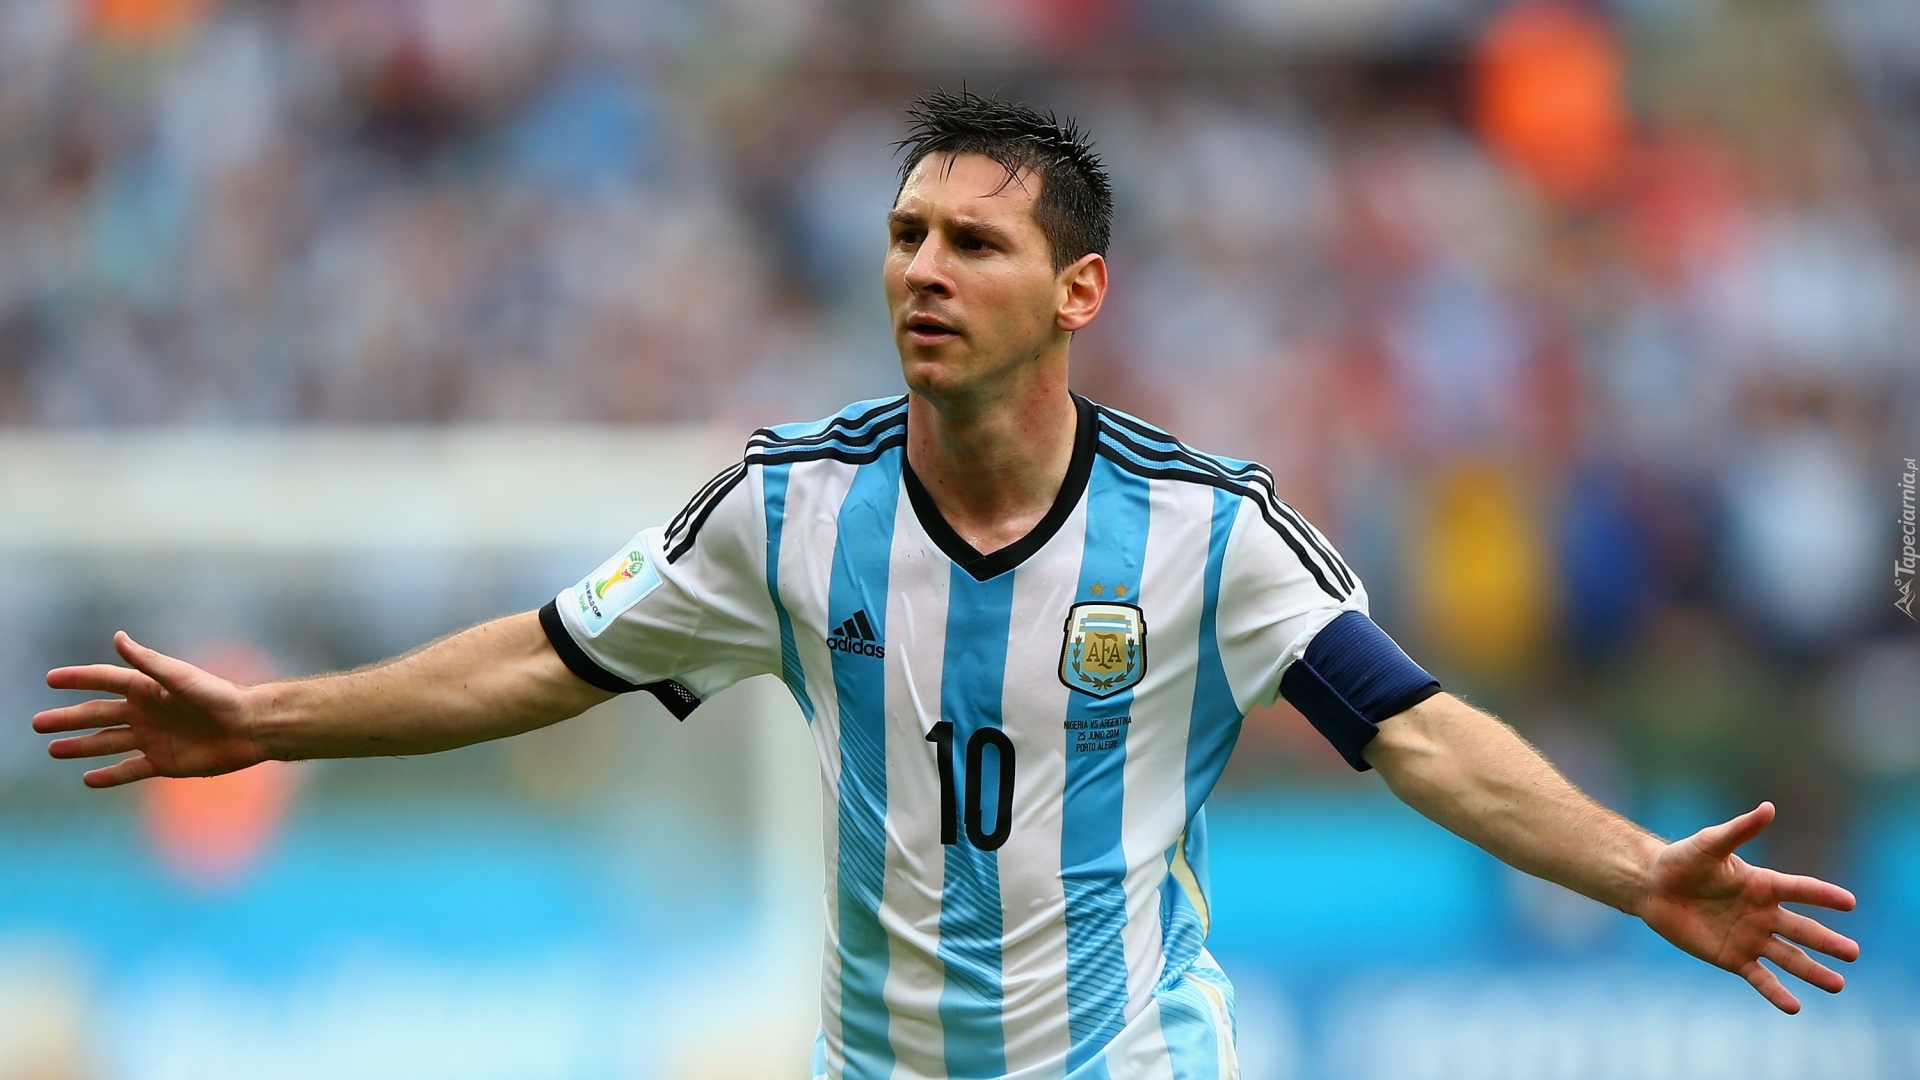 Piłkarz, Lionel Messi